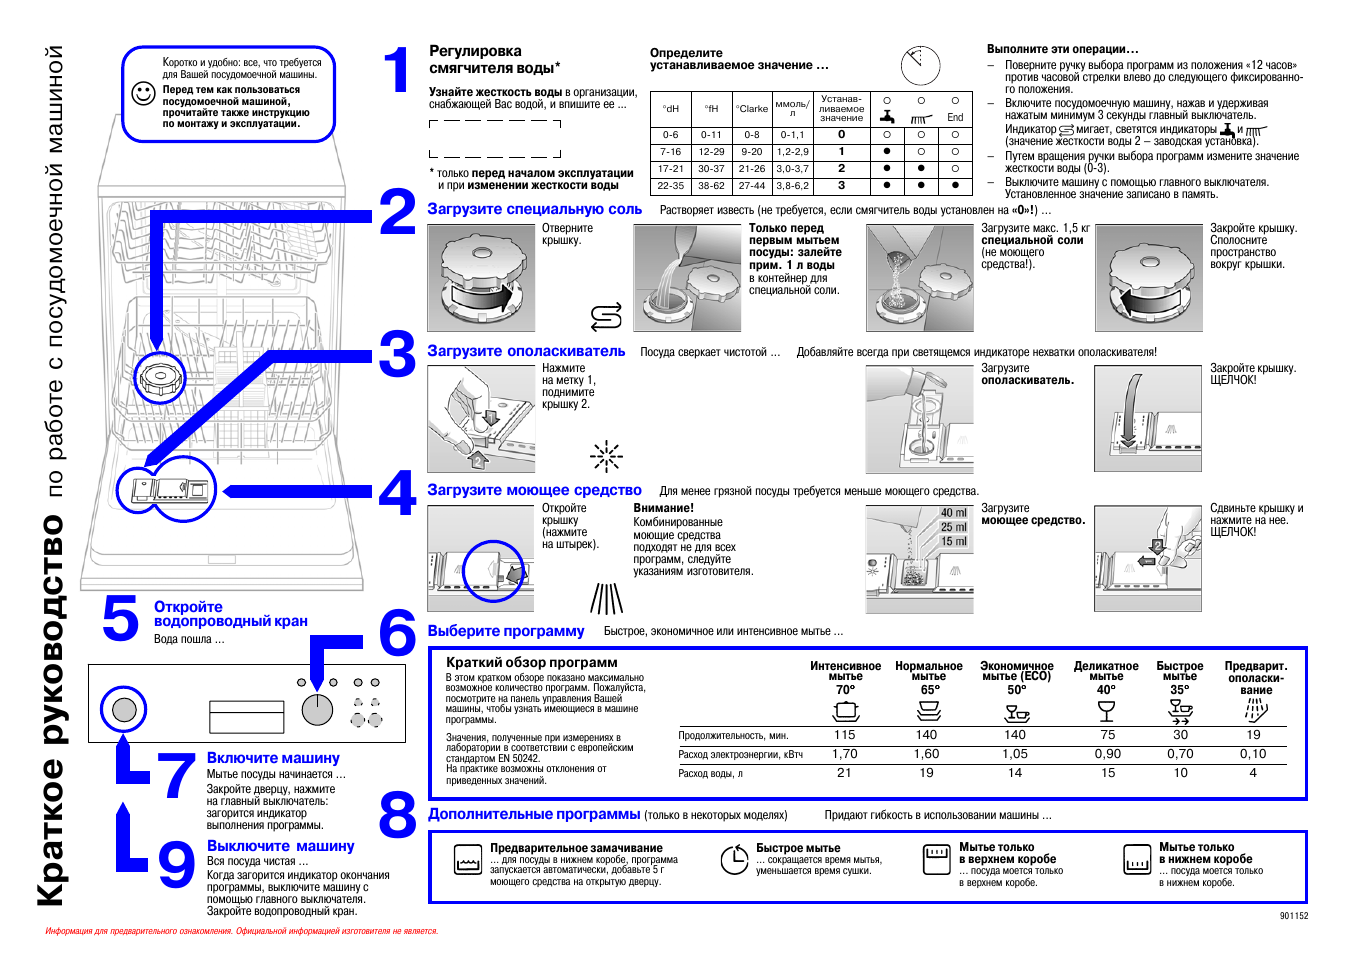 Как пользоваться посудомоечной машиной Bosch: правила и нюансы эксплуатации